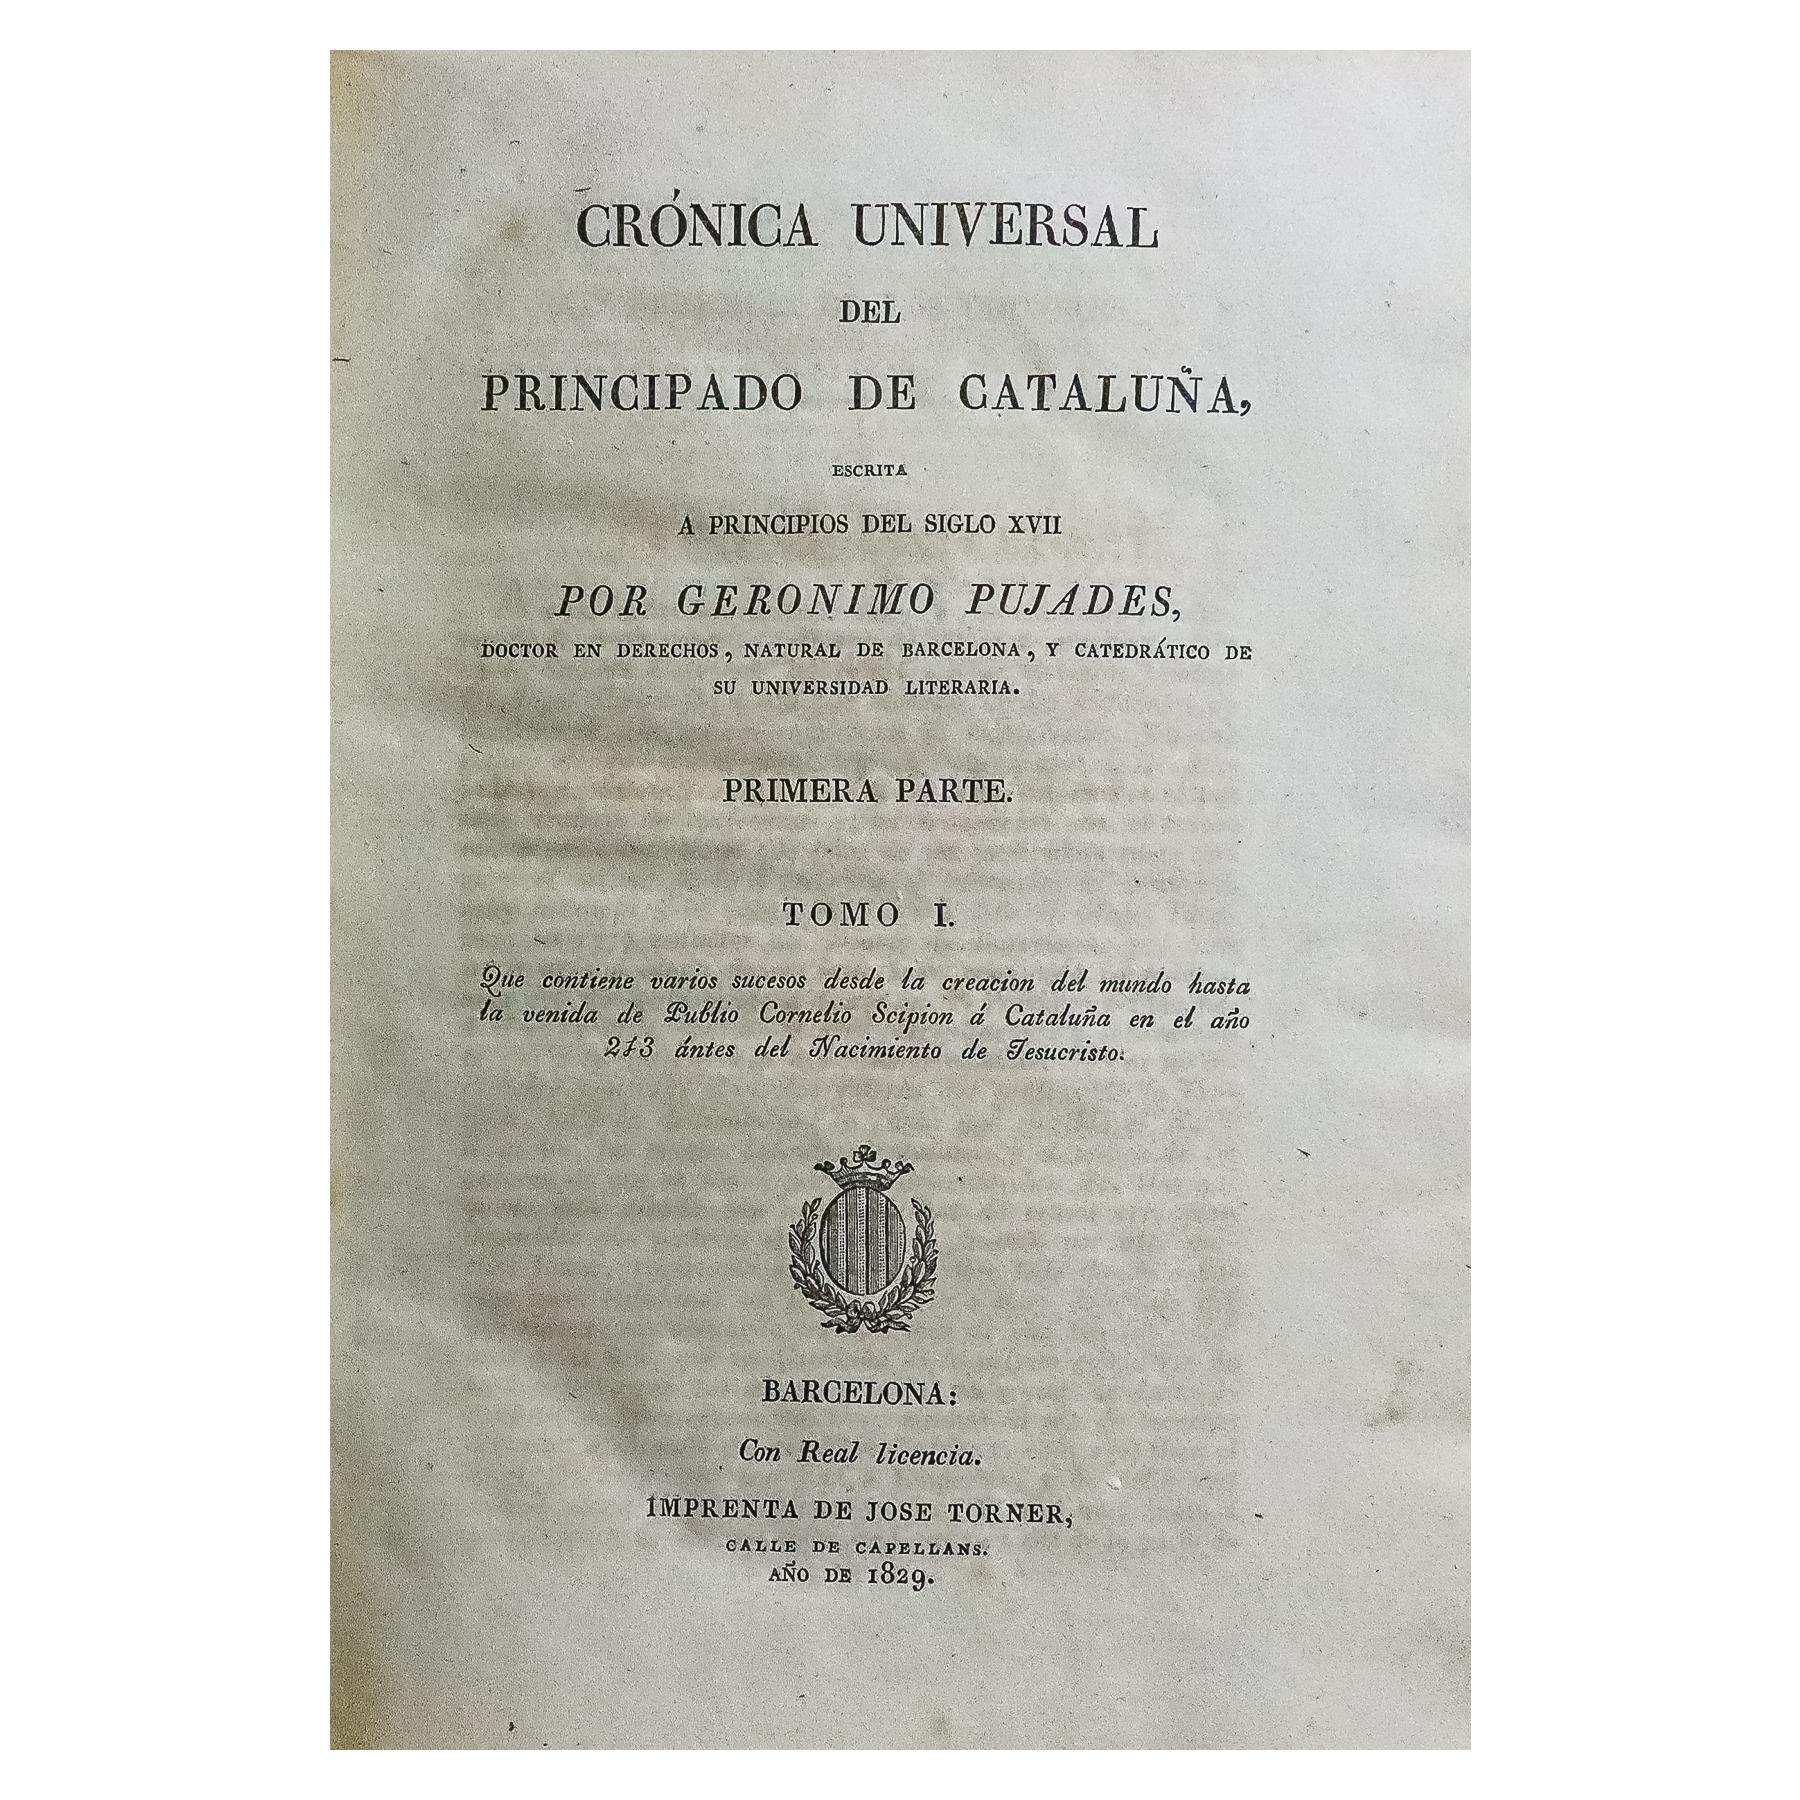 "CRÓNICA UNIVERSAL DEL PRINCIPADO DE CATALUÑA"